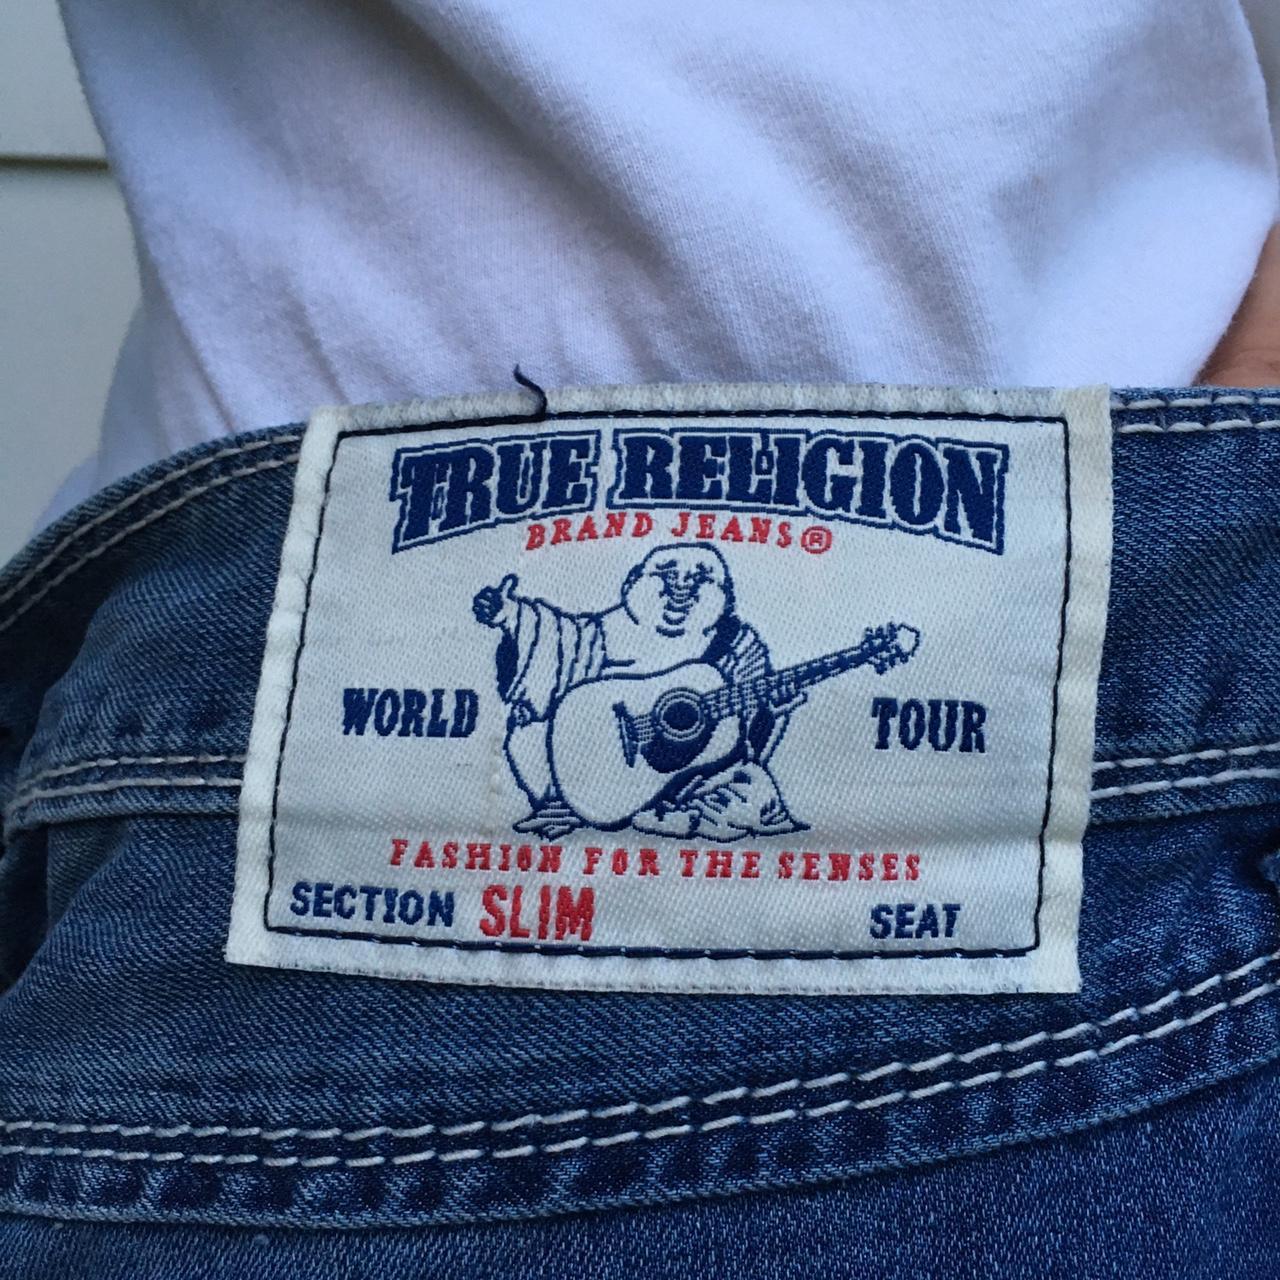 Authentic true religion jeans Size 38x36 Slim fit... - Depop